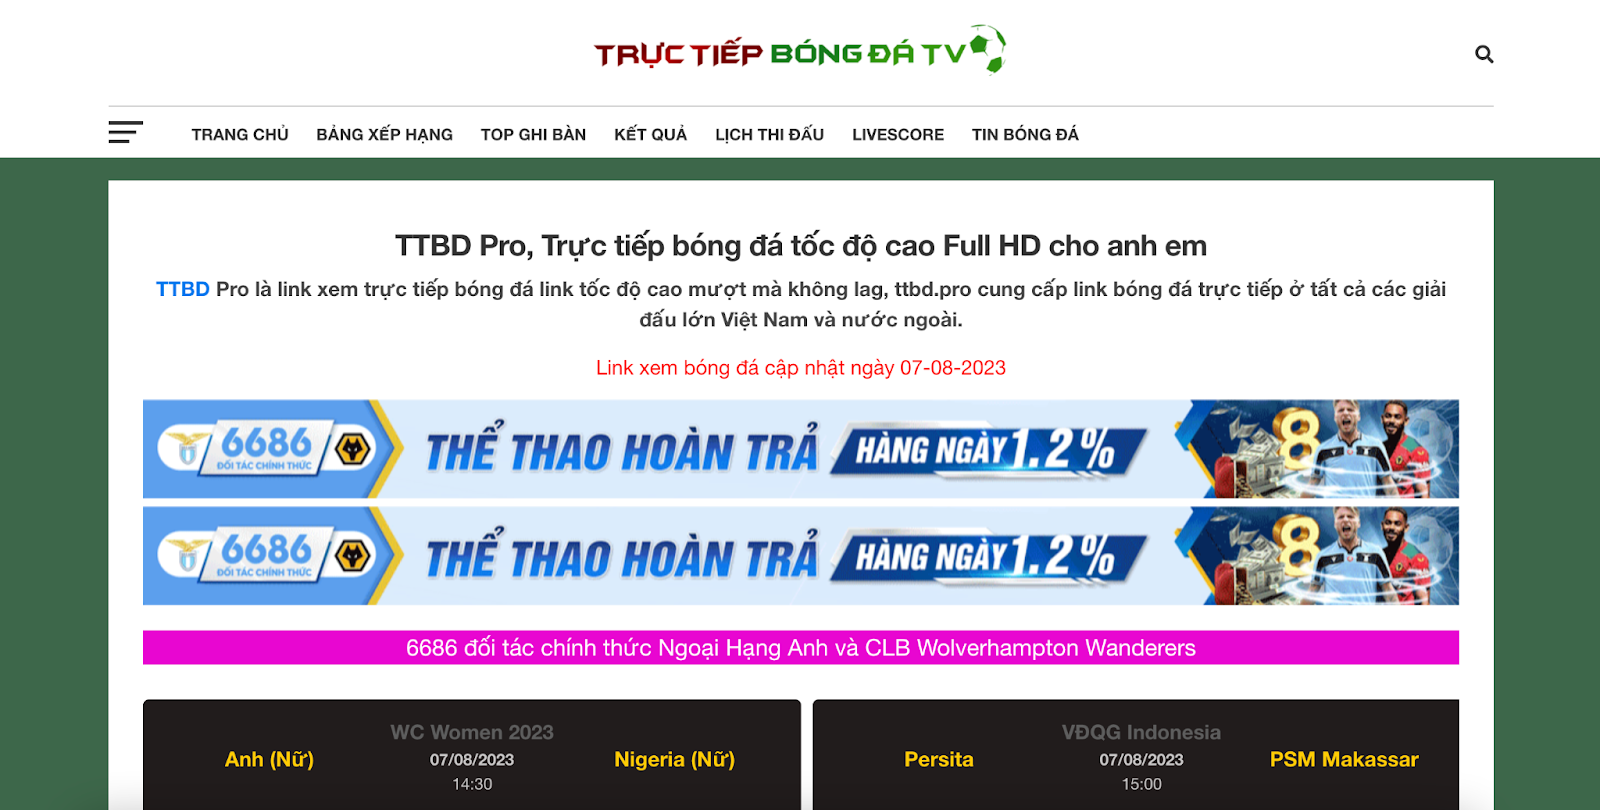 TTBD Pro cung cấp các đường link trực tiếp với hình ảnh sắc nét và sống động